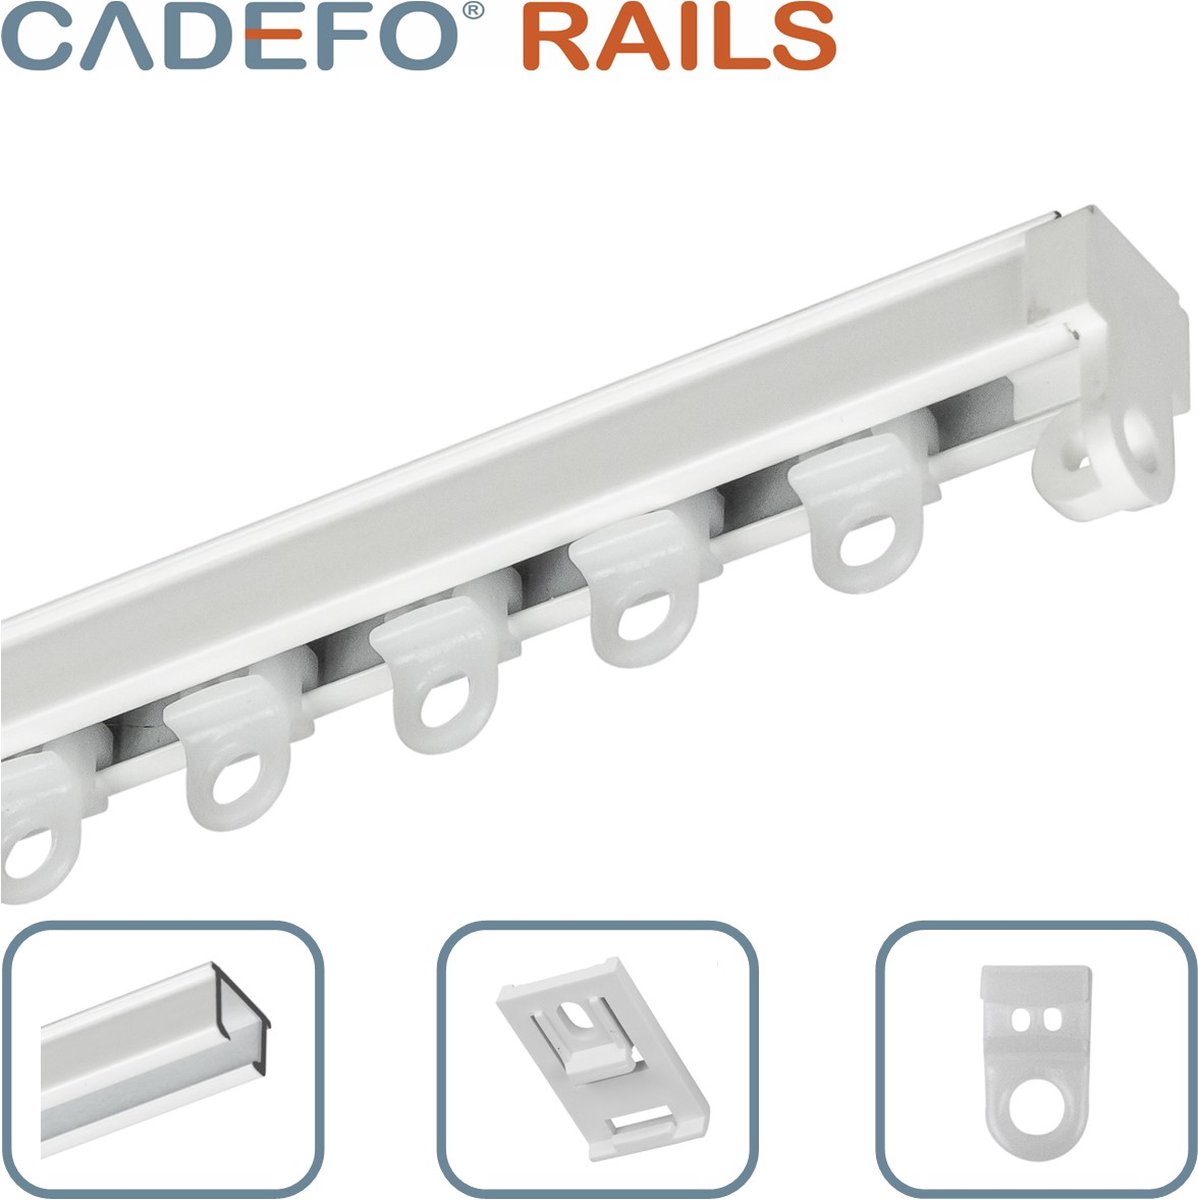 CADEFO RAILS (101 - 150 cm) Gordijnrails - Compleet op maat! - UIT 1 STUK - Leverbaar tot 6 meter - Plafondbevestiging - Lengte 144 cm